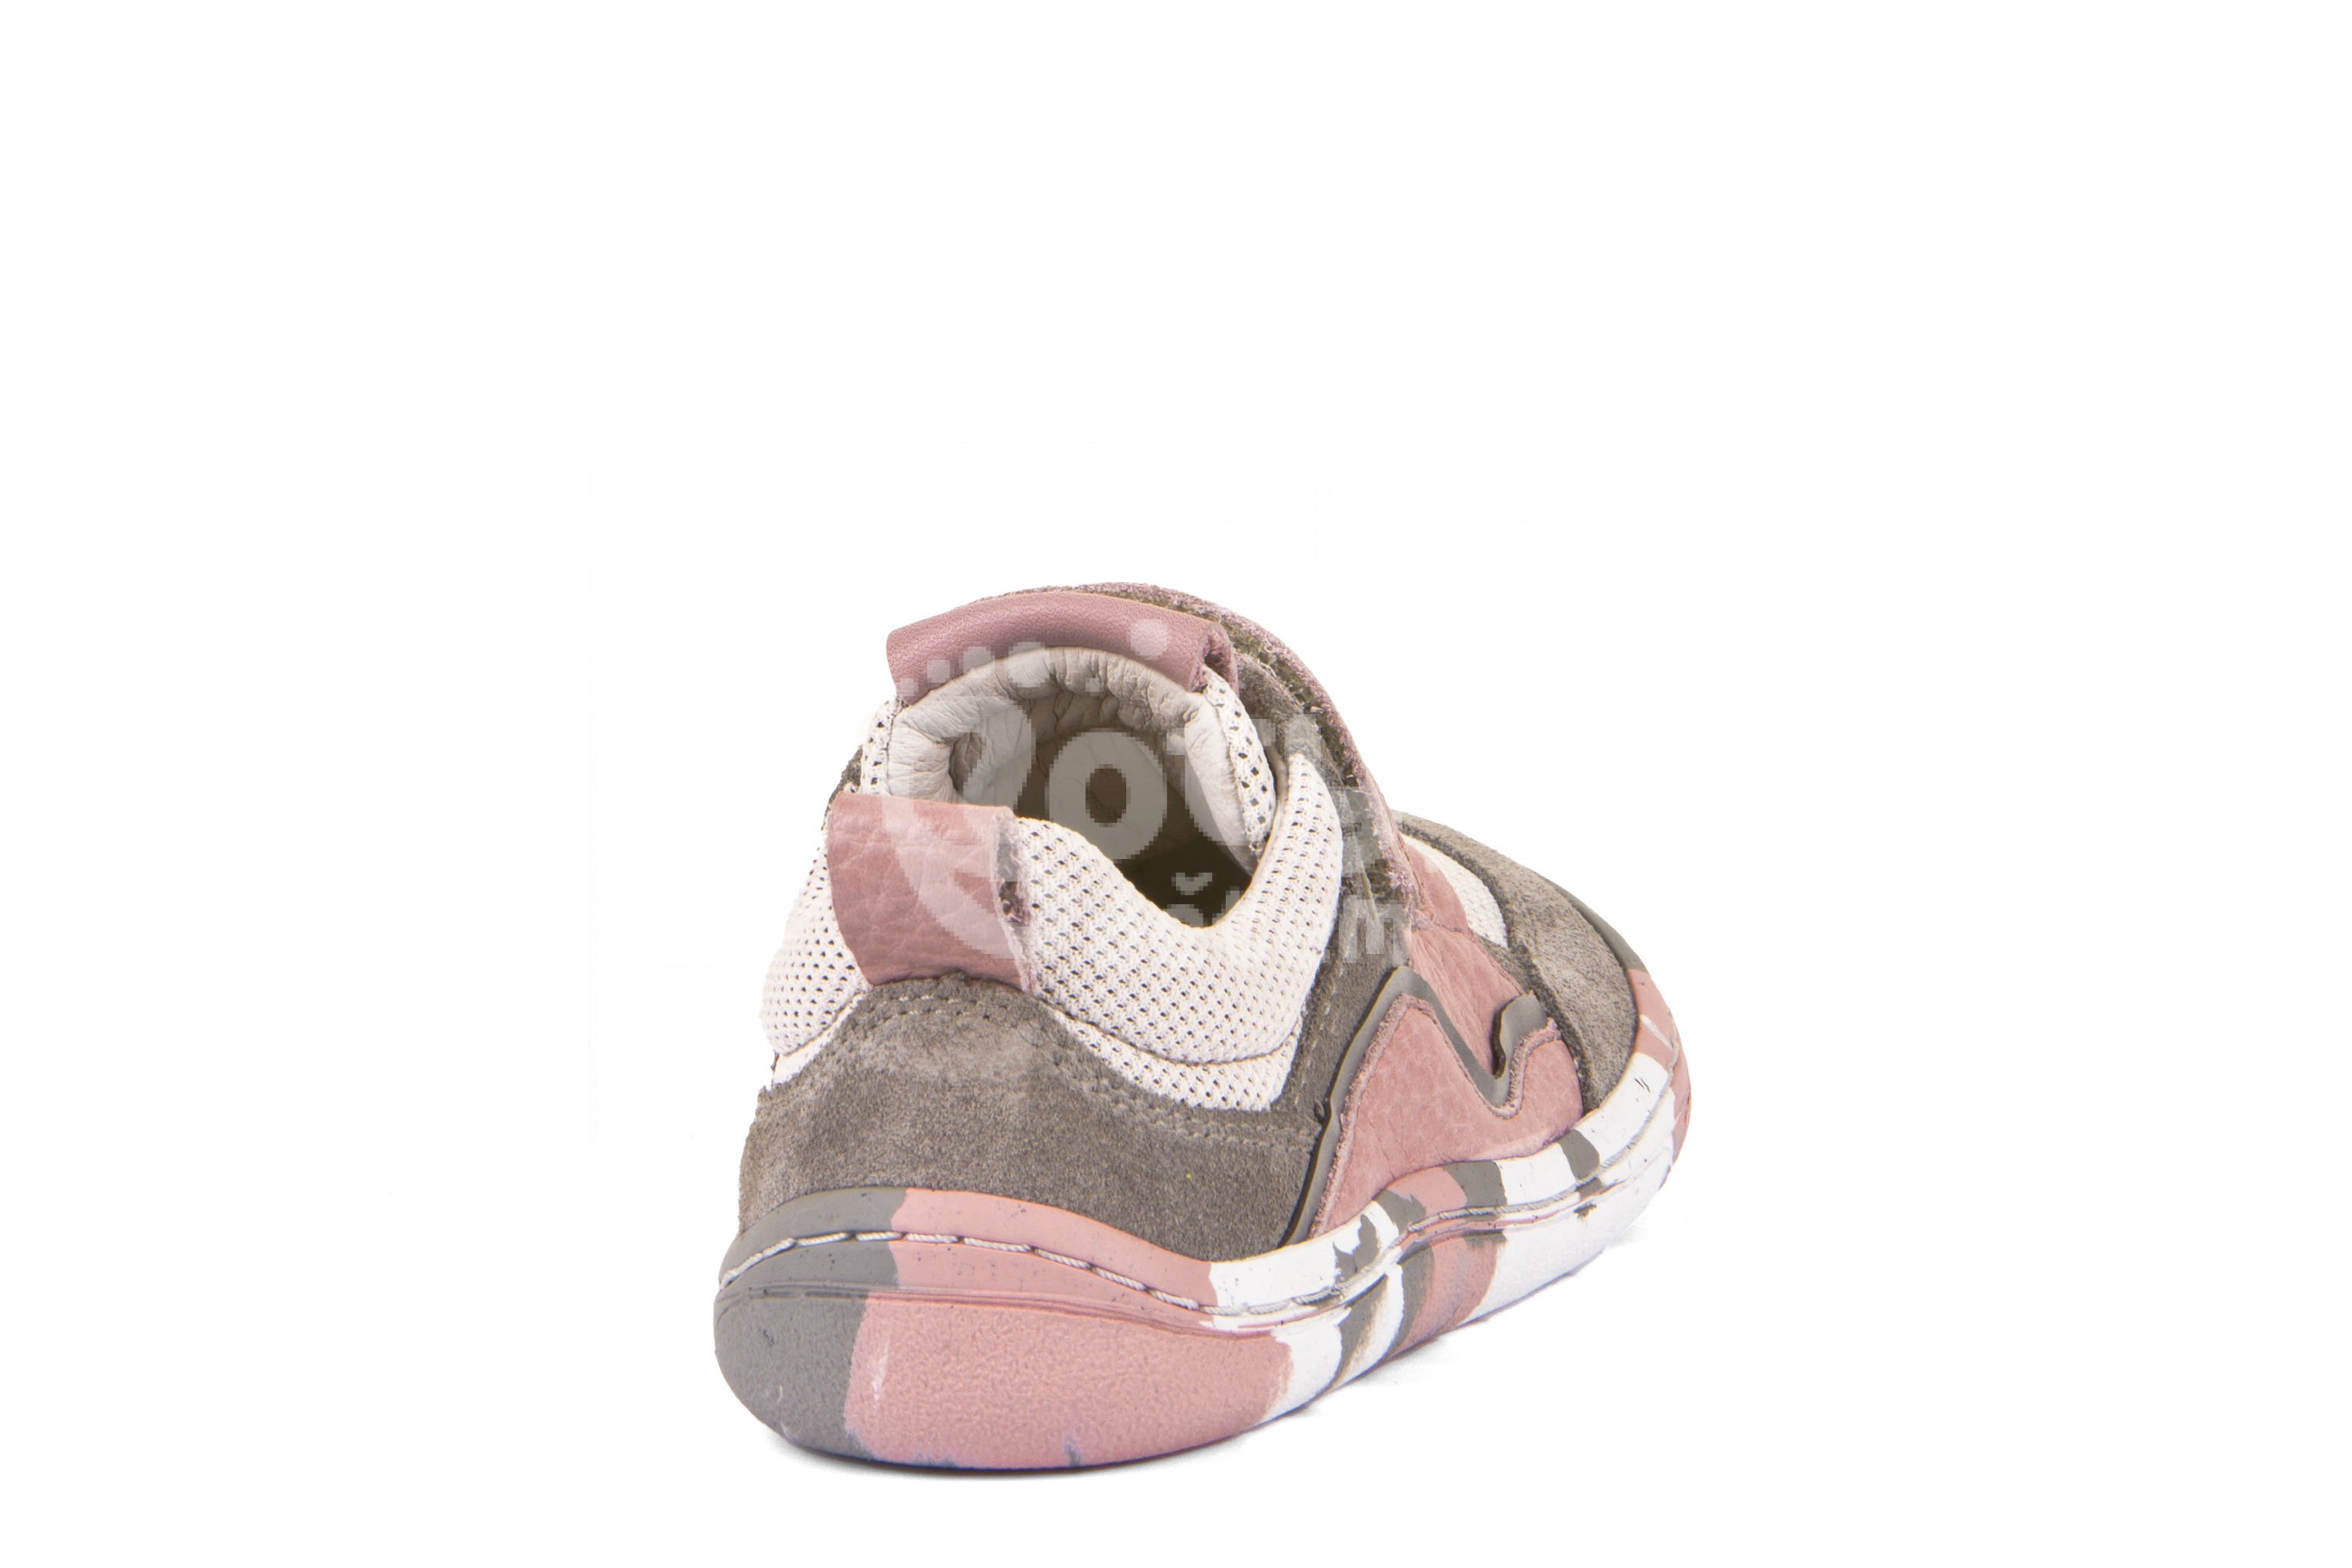 Froddo barefoot tenisky G3130203-4 pink